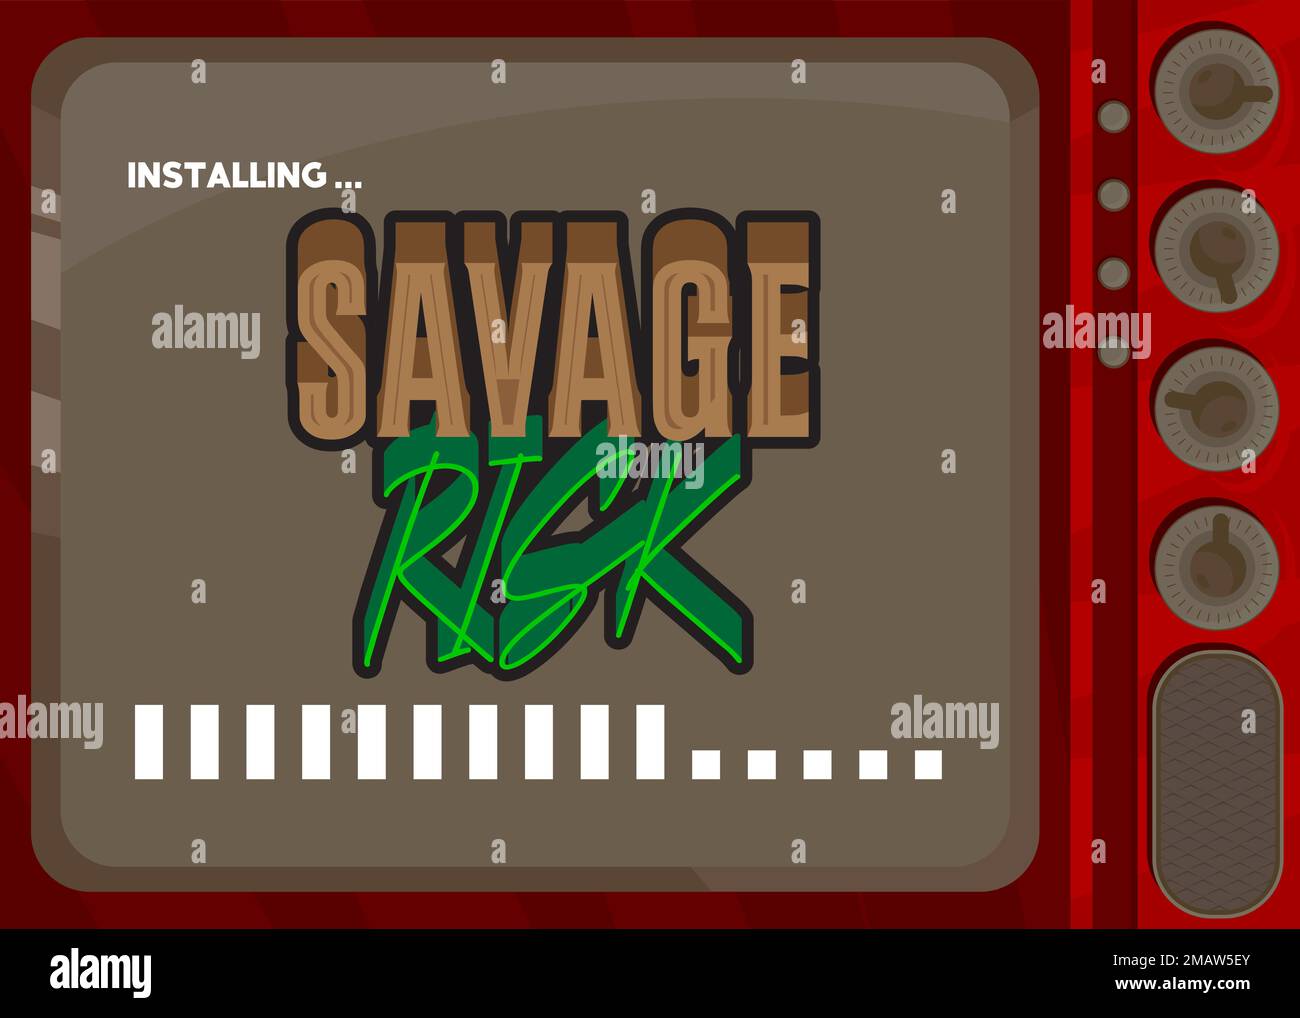 Computer cartoon con la parola Savage rischio. Messaggio di una schermata che visualizza una finestra di installazione. Illustrazione Vettoriale